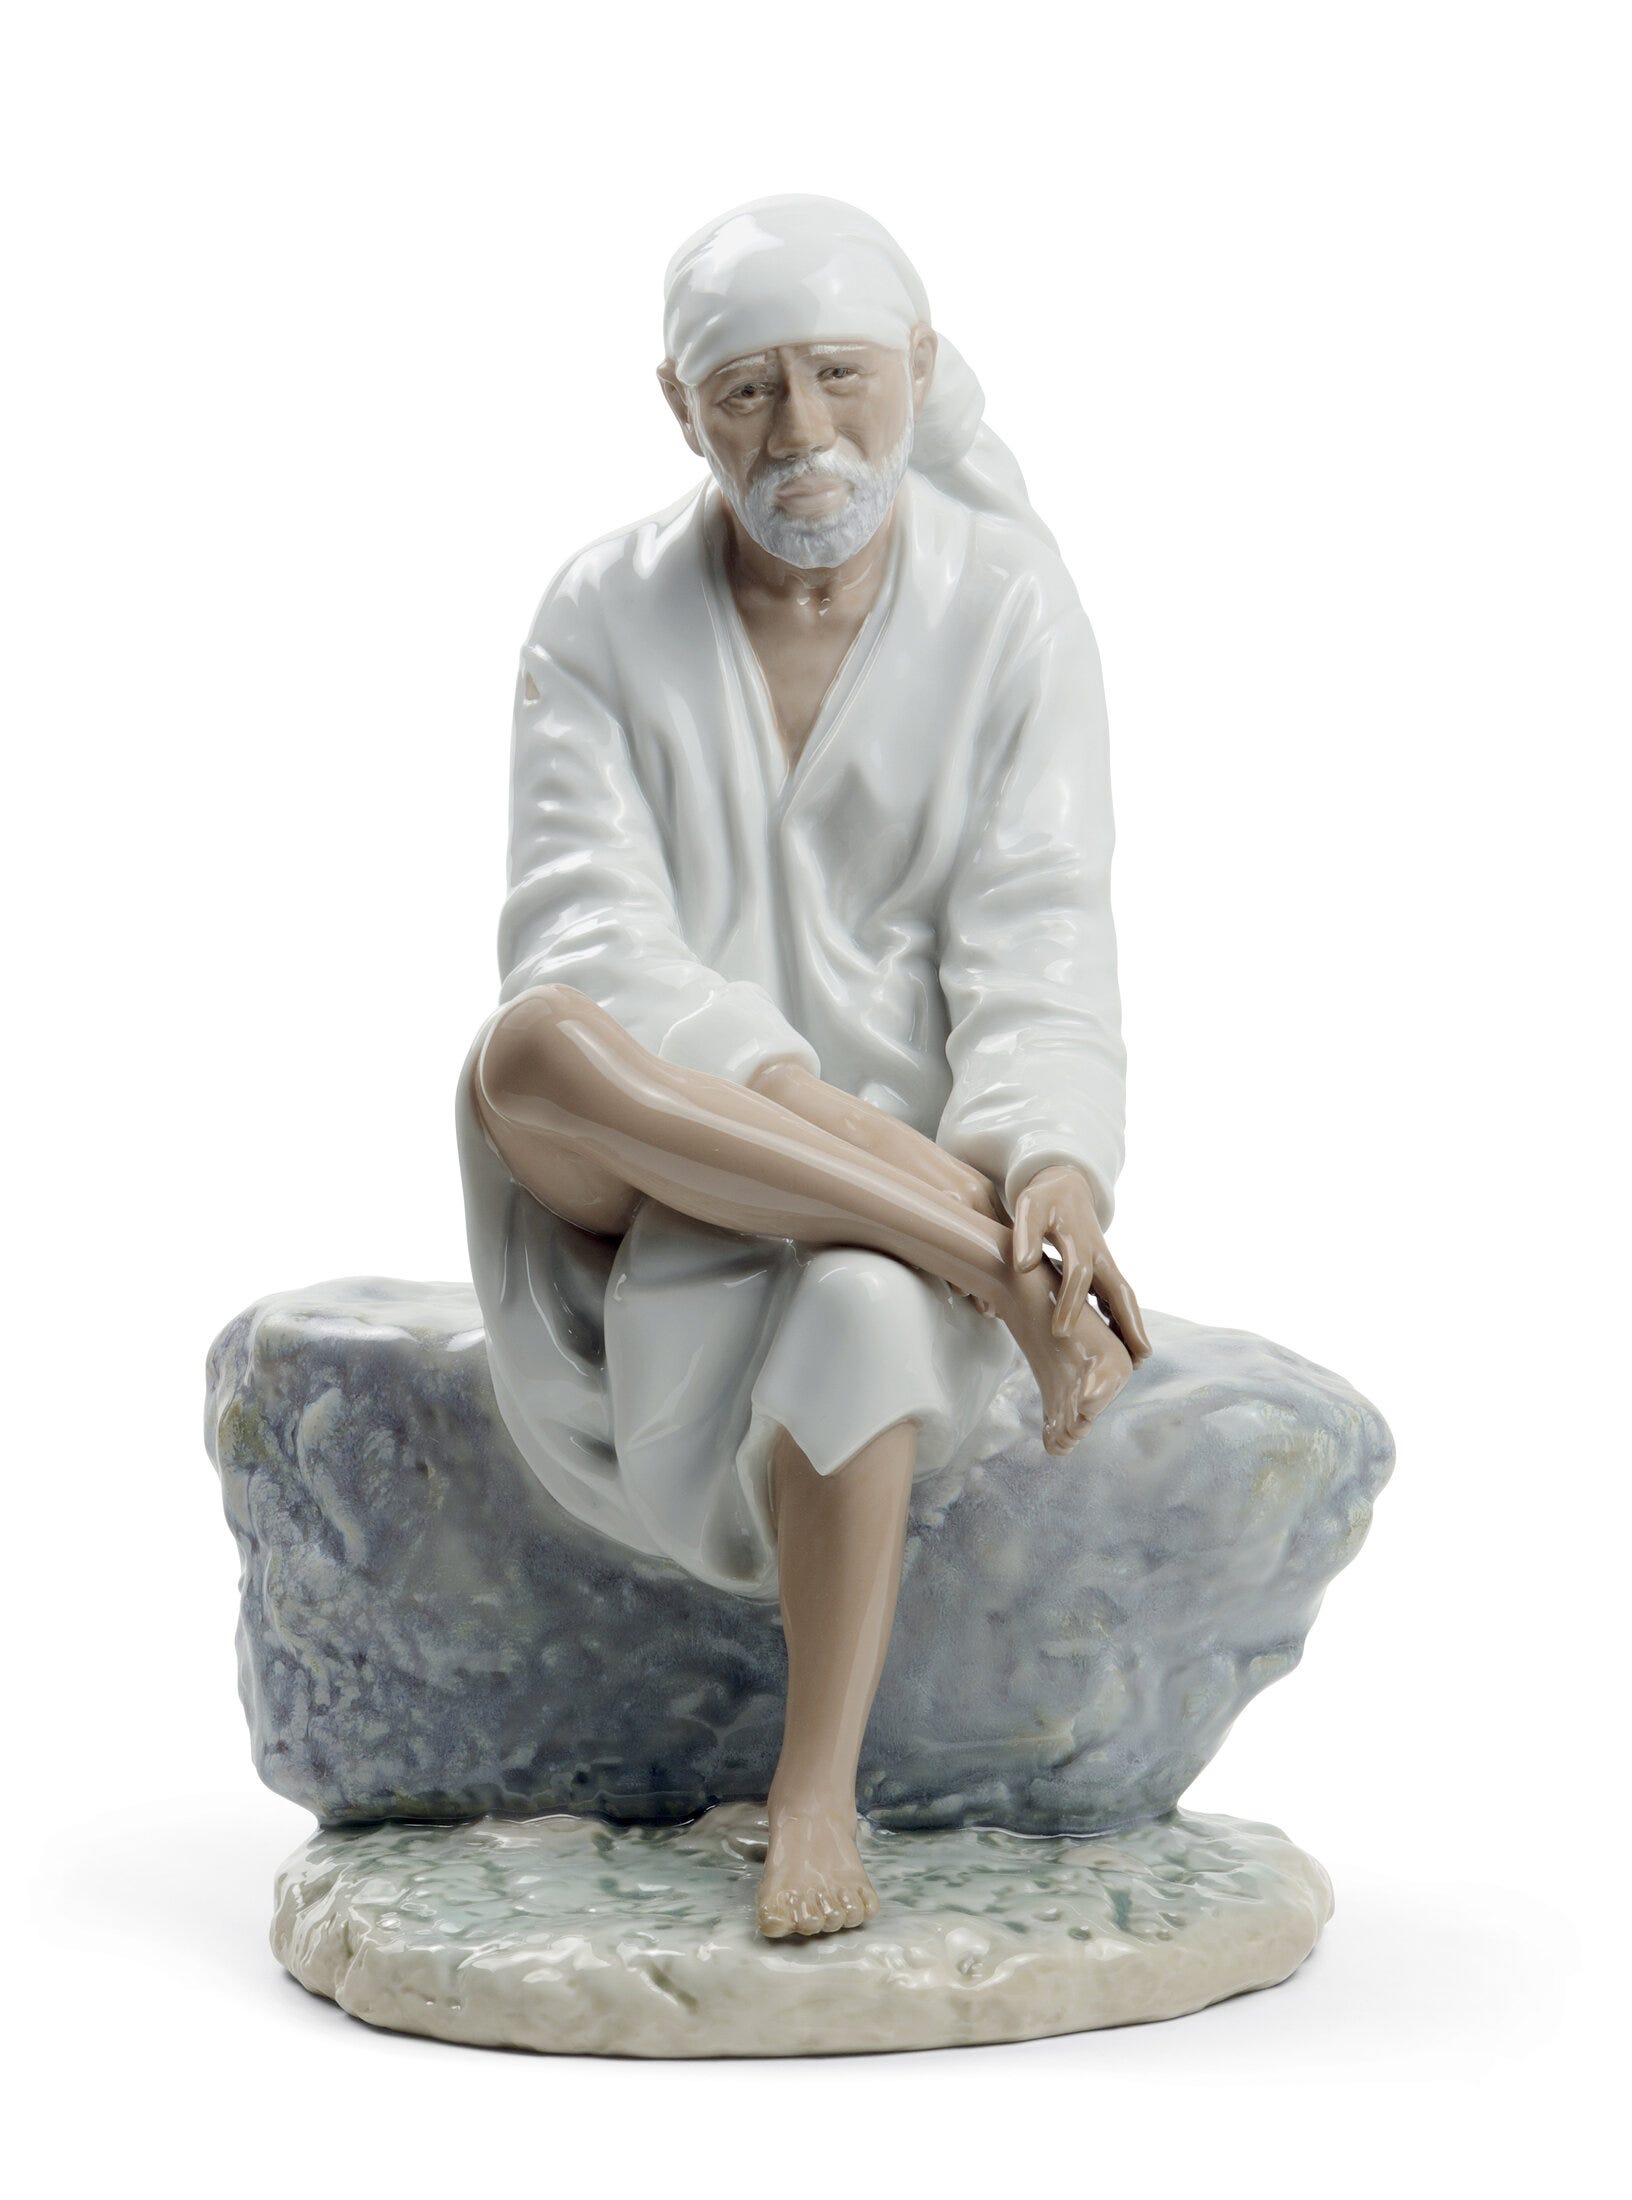 Figurina di Sai Baba